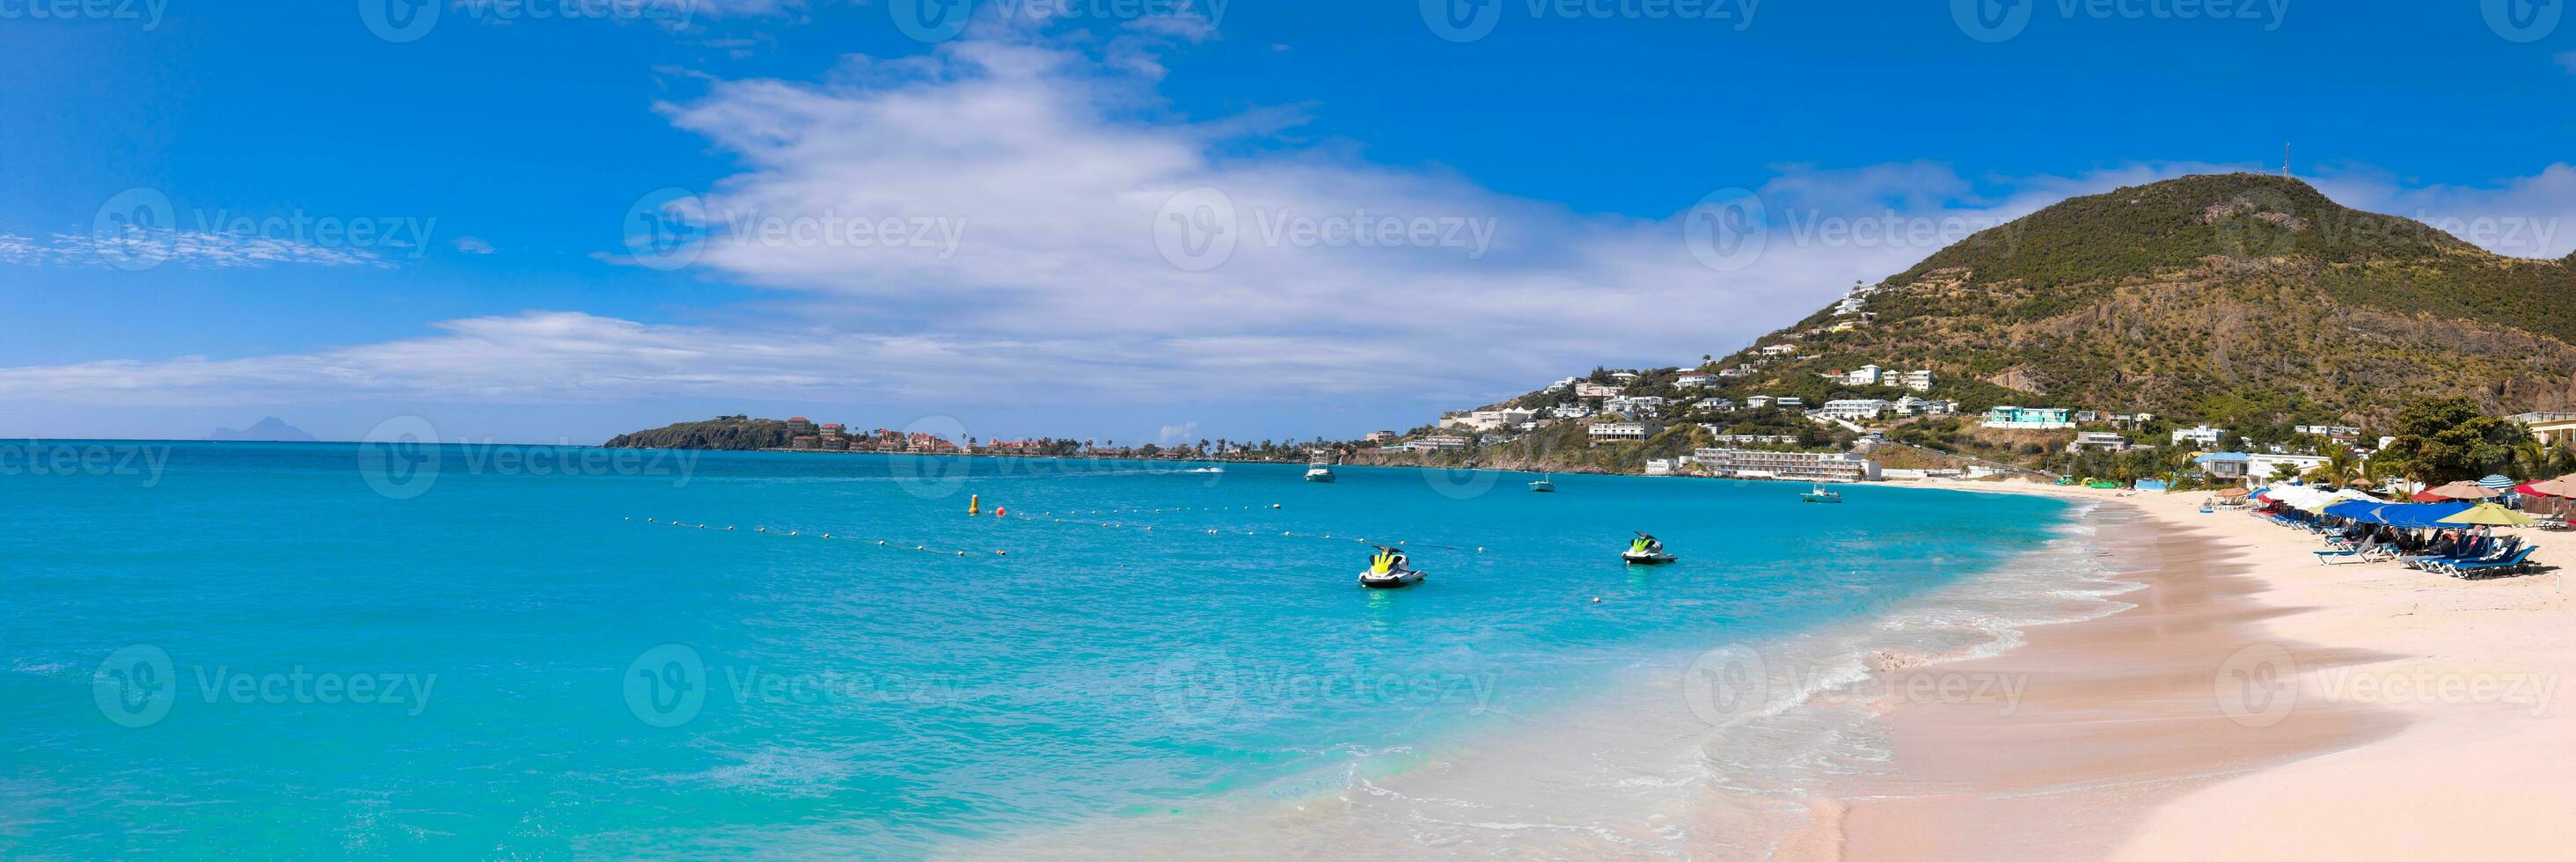 Caribbean vacation in Philipsburg, Sint Maarten scenic panoramic shoreline and sand beaches photo